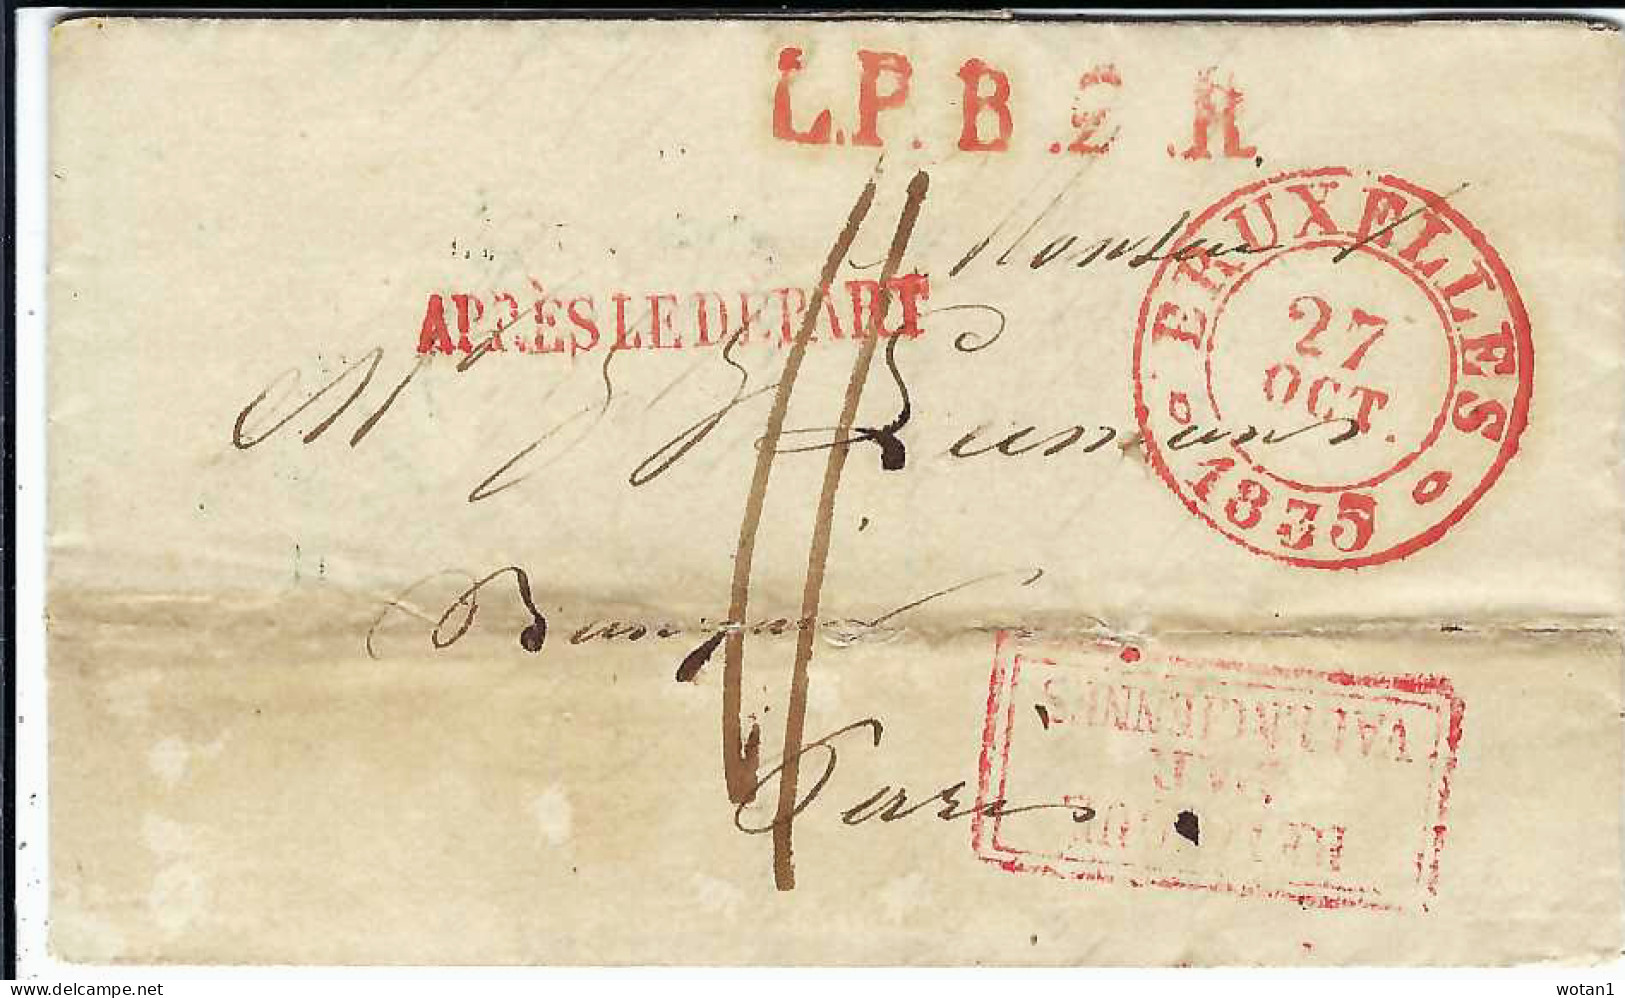 Lettre De BRUXELLES Du 27 OCT 1835 à PARIS + Griffes "L.P.B..R" + "APRES LE DEPART" + "BELGIQUE PAR VALENCIENNES" - 1830-1849 (Belgique Indépendante)